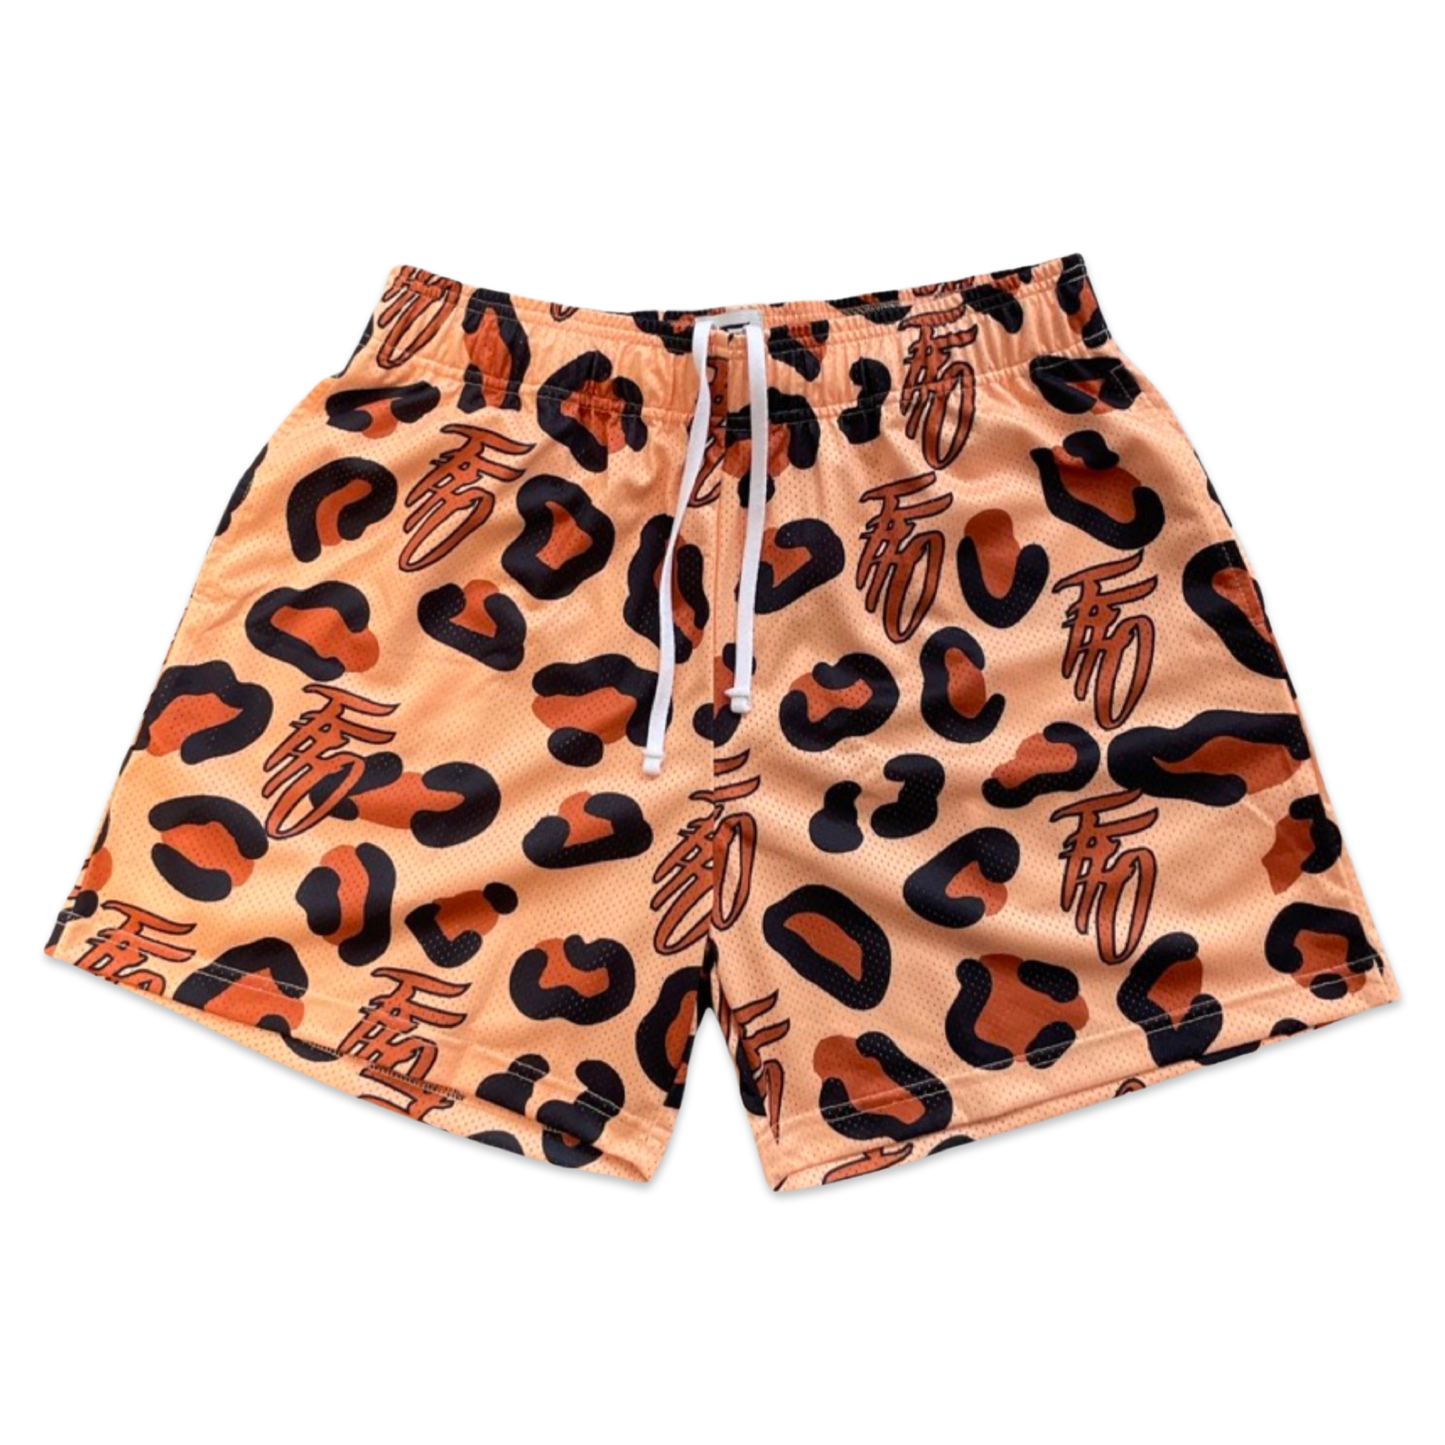 The Perfect Mesh Shorts - Cheetah